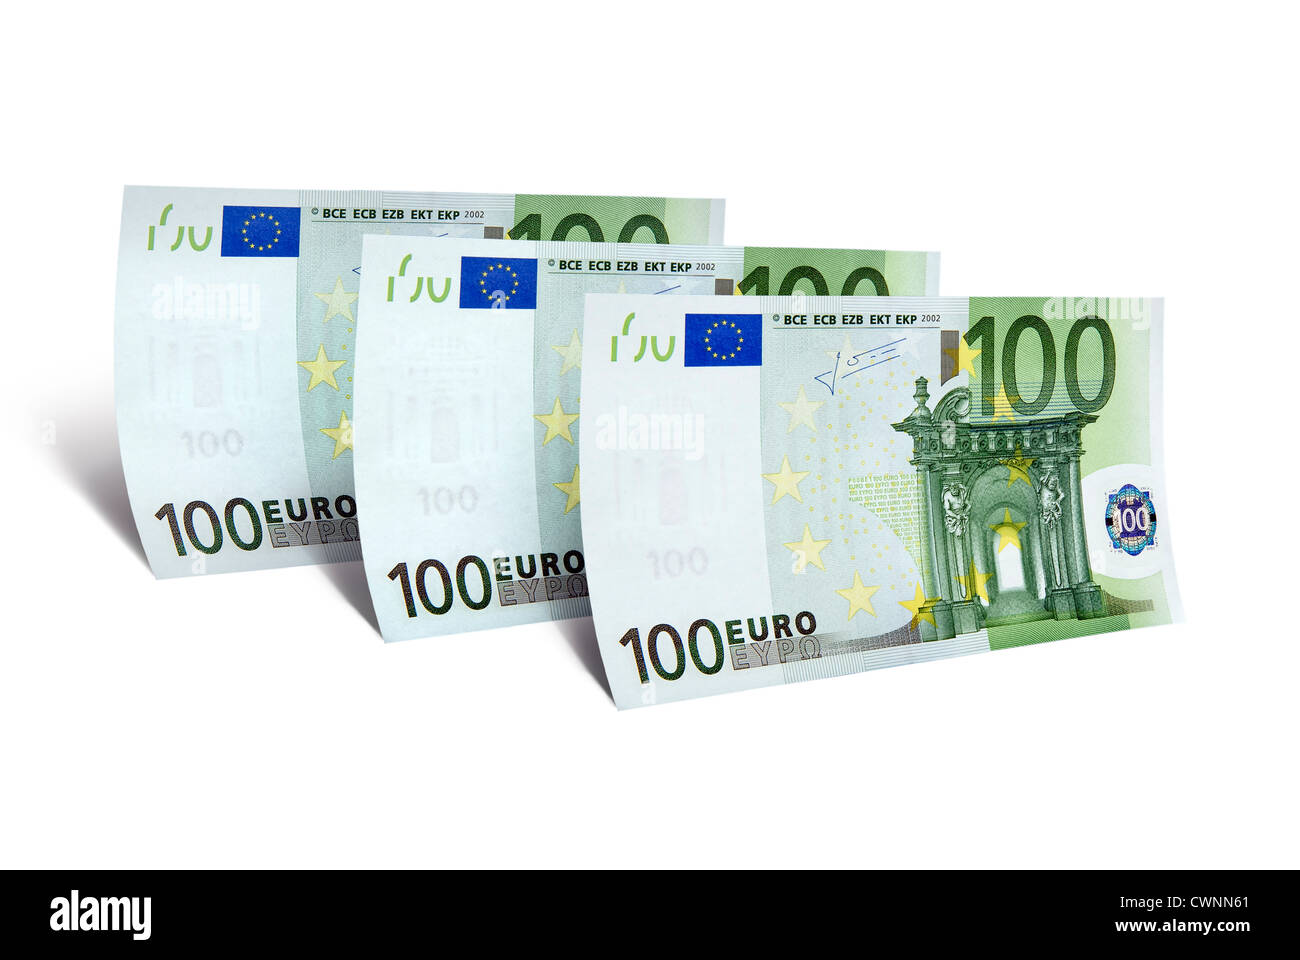 3 100 billets en euros, 300 euros, monnaie européenne, isolé sur fond blanc 100 % Banque D'Images